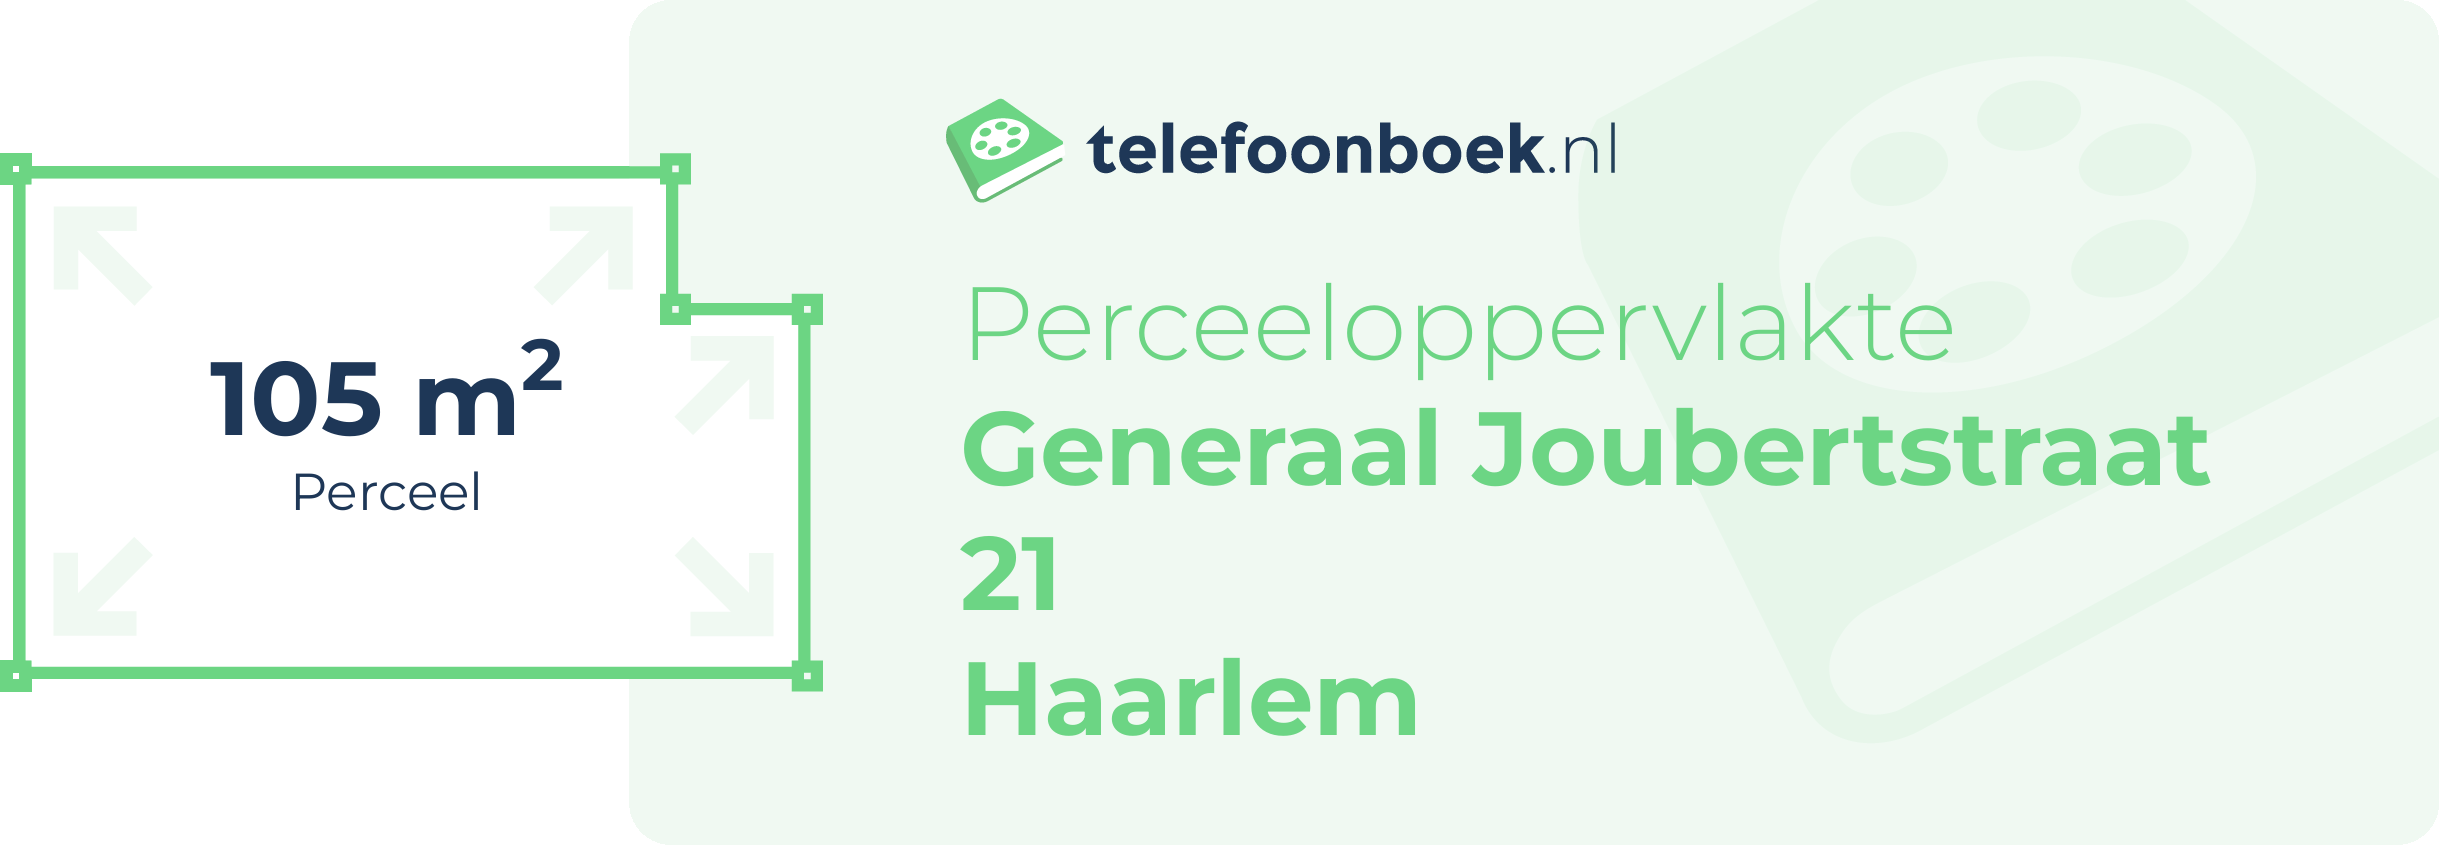 Perceeloppervlakte Generaal Joubertstraat 21 Haarlem